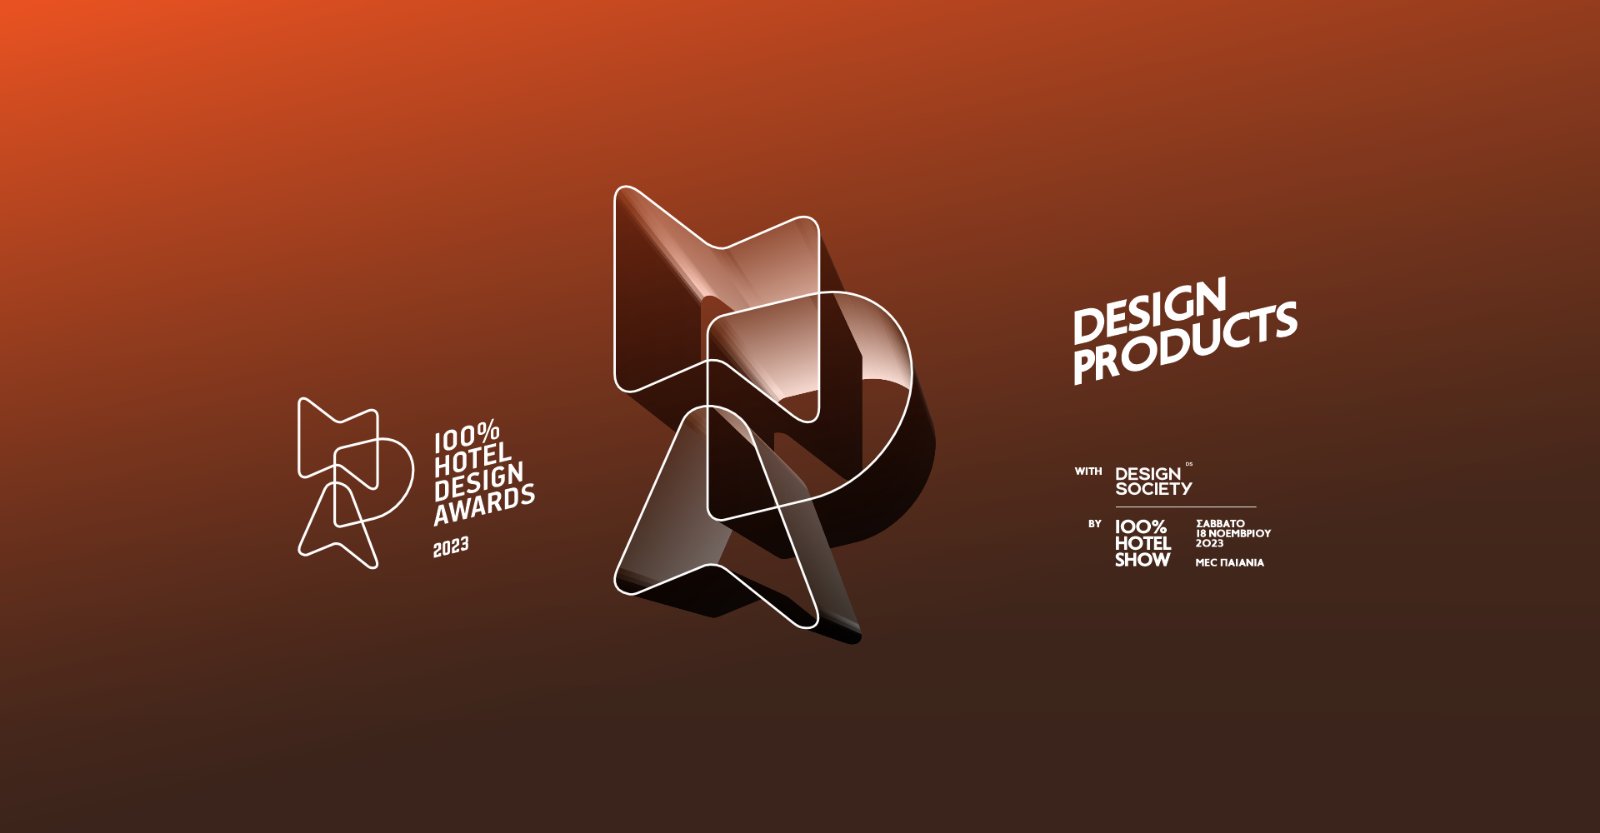 Κατηγορία “Design Products” στα 100% Hotel Design Awards 2023